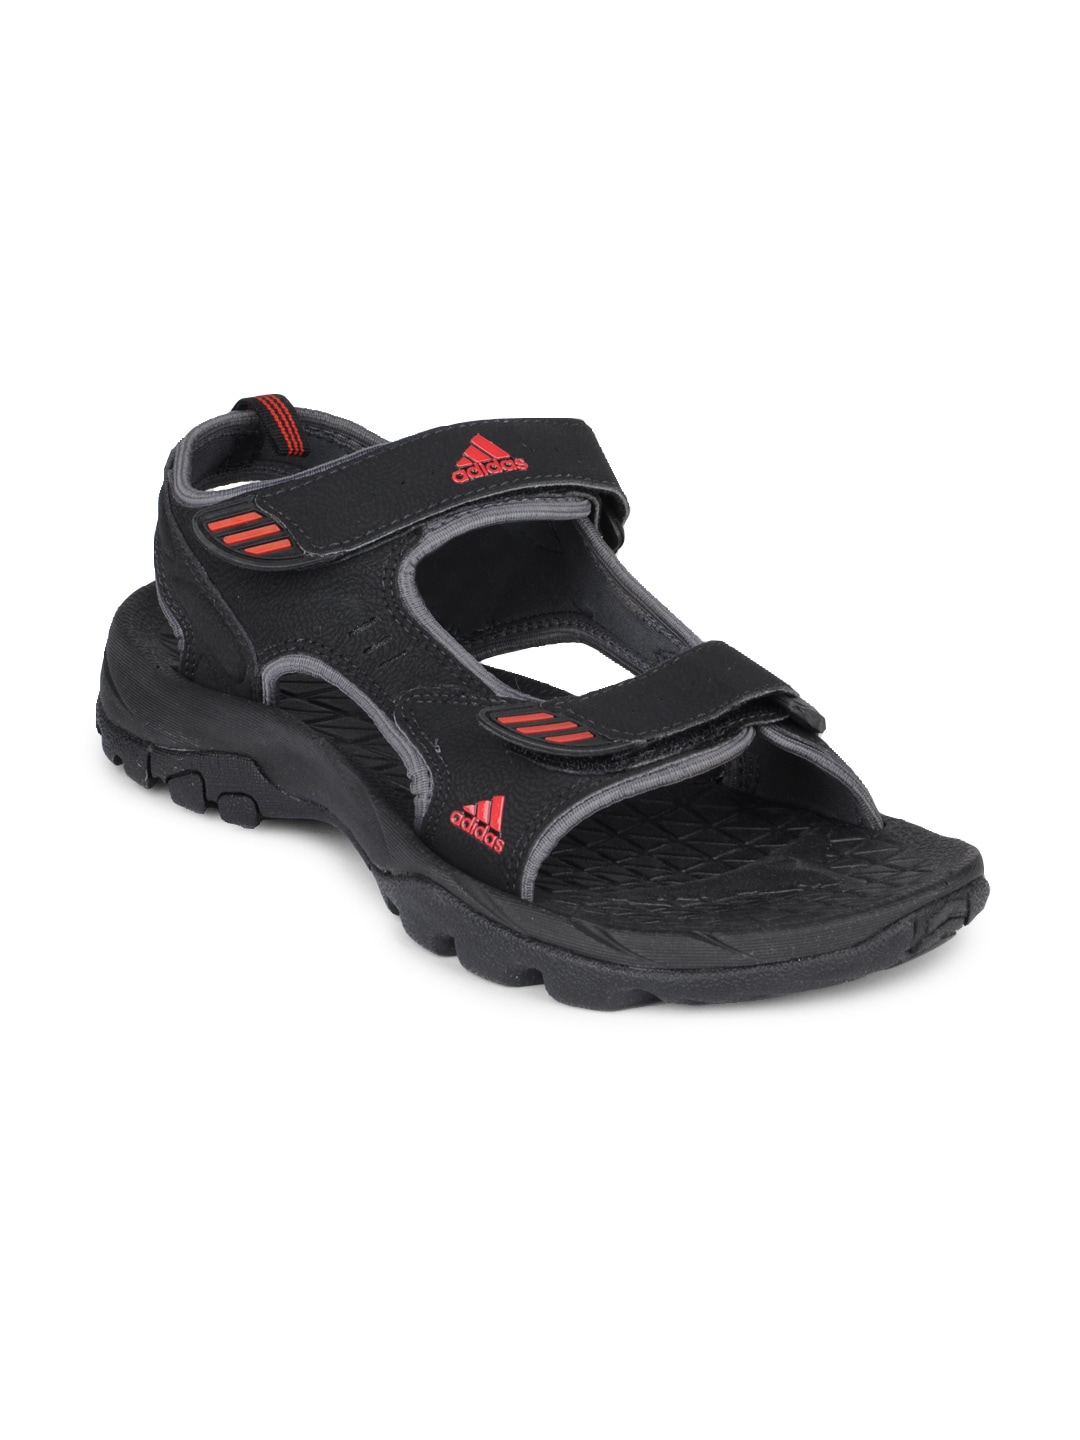 ADIDAS Men Black Sandals